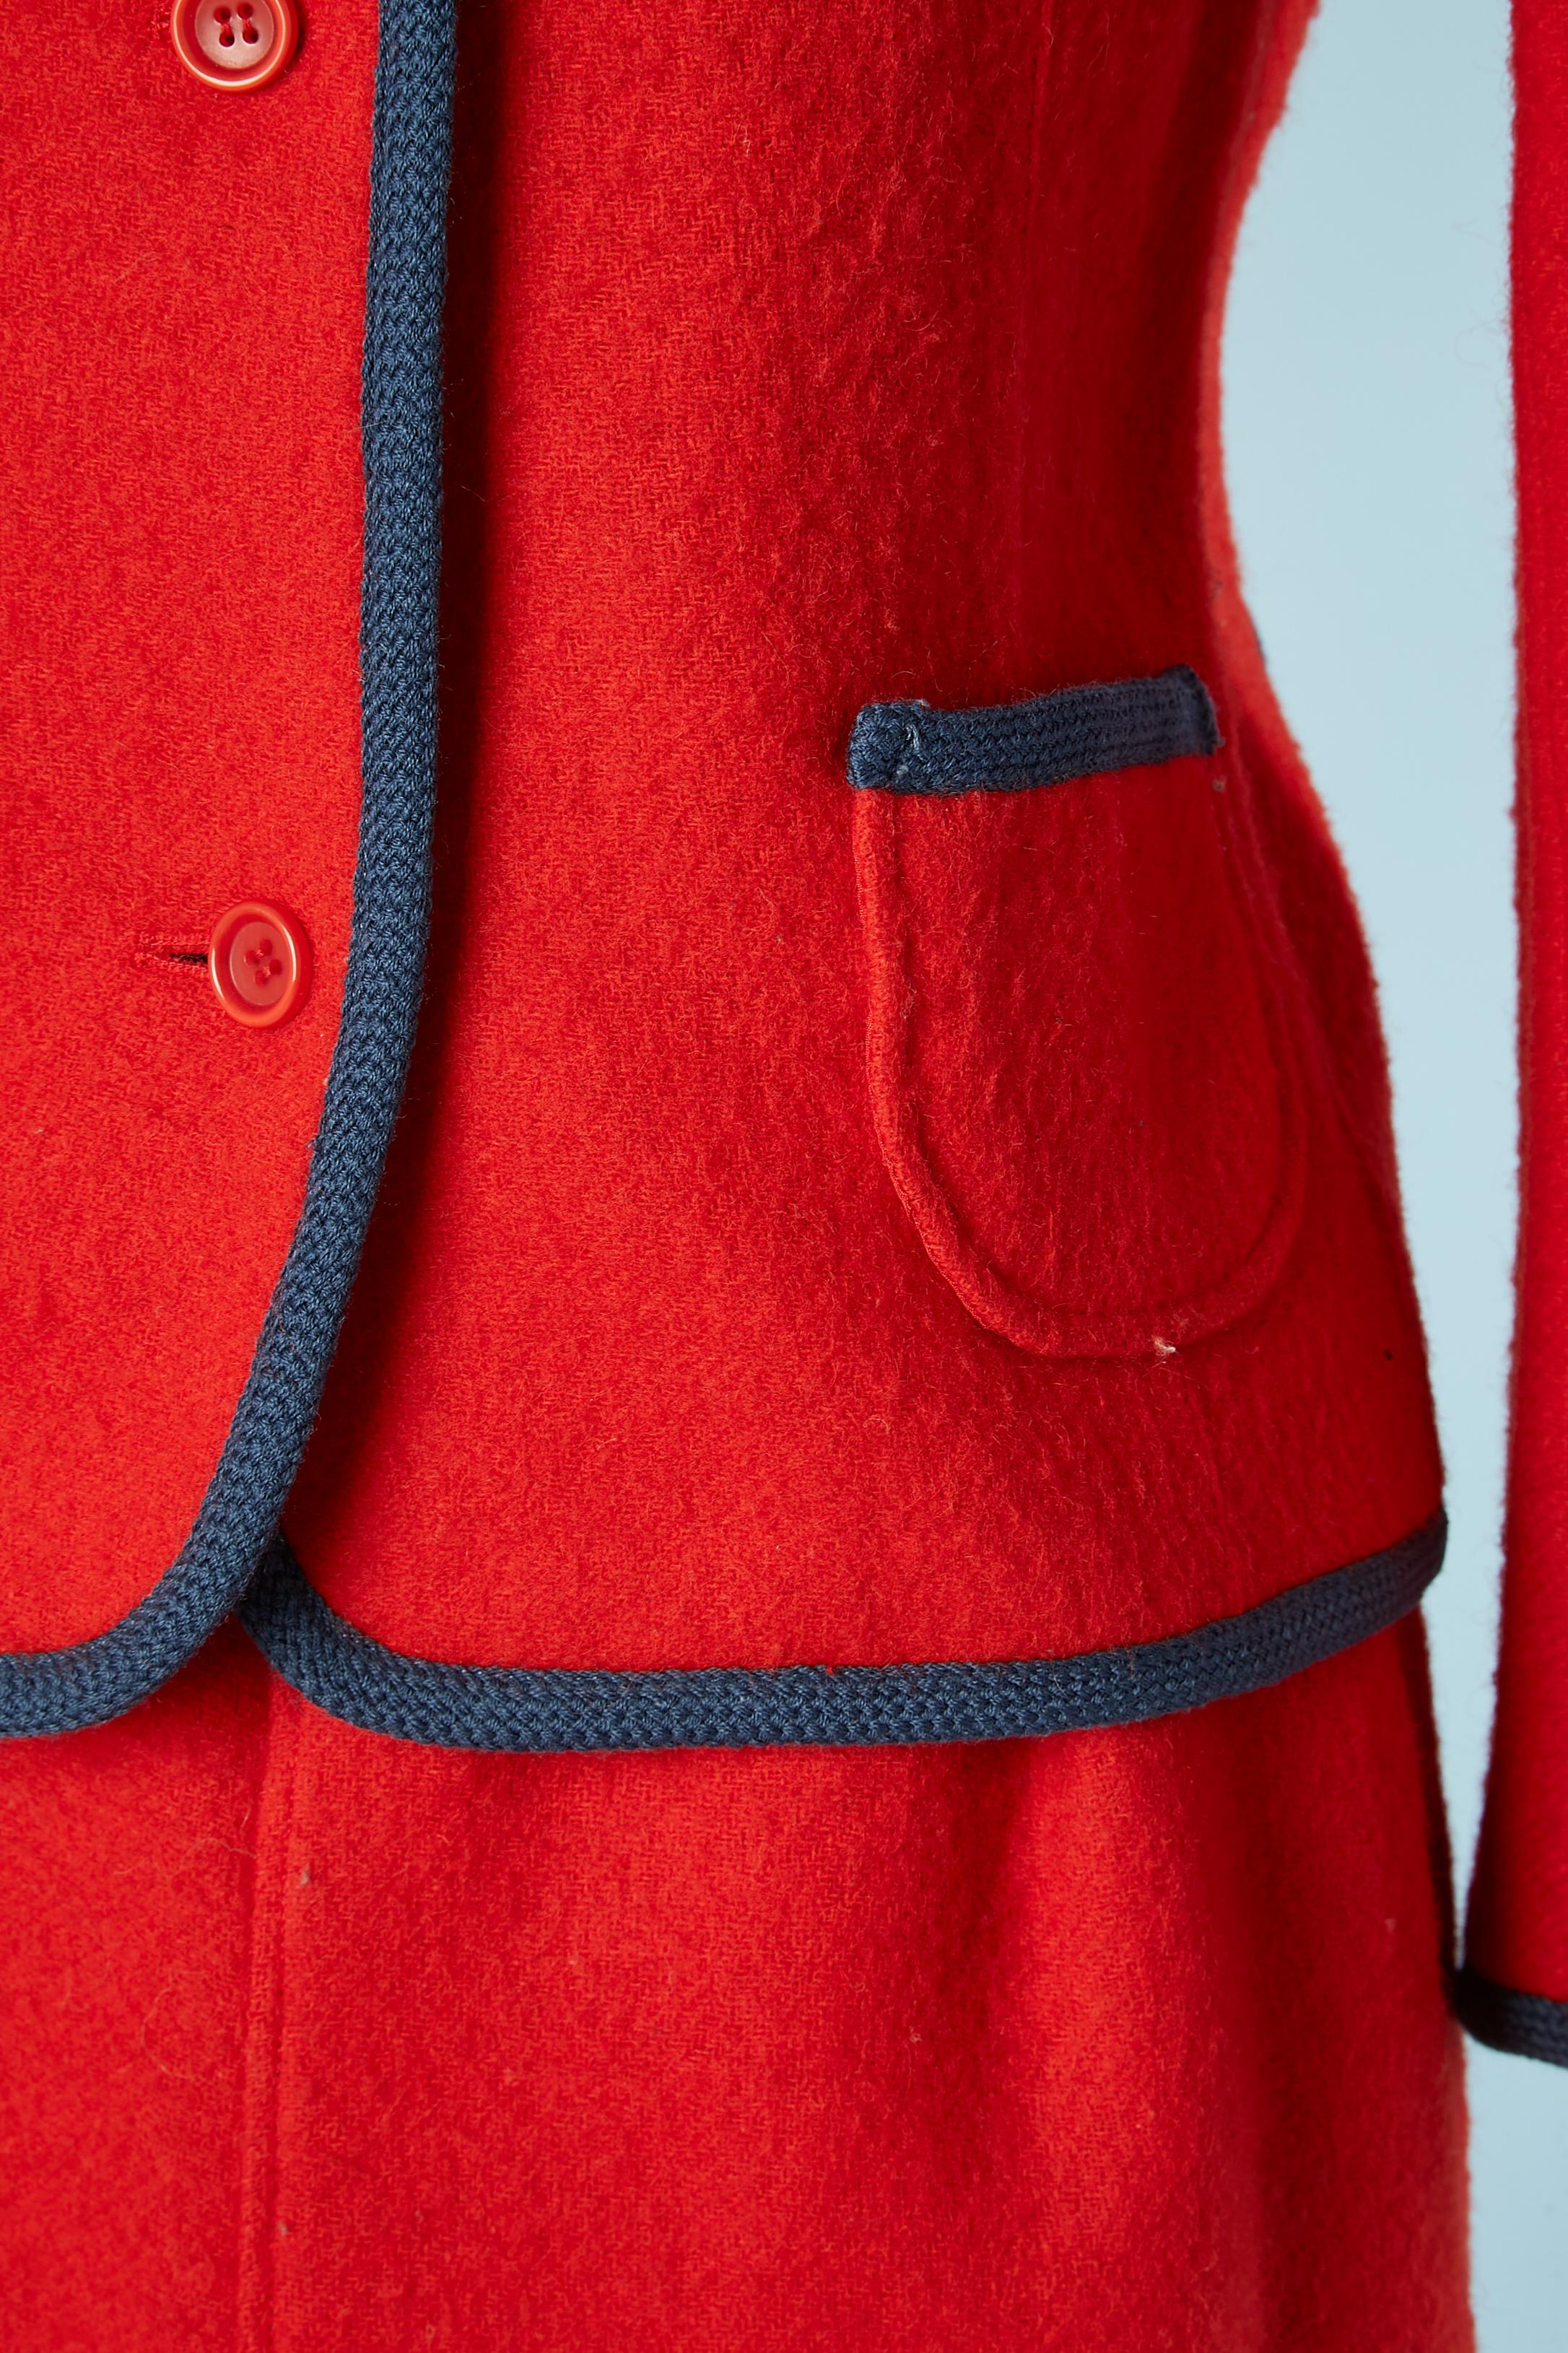 Rouge Combinaison jupe en laine rouge, col en velours côtelé bleu Courrèges Paris  en vente